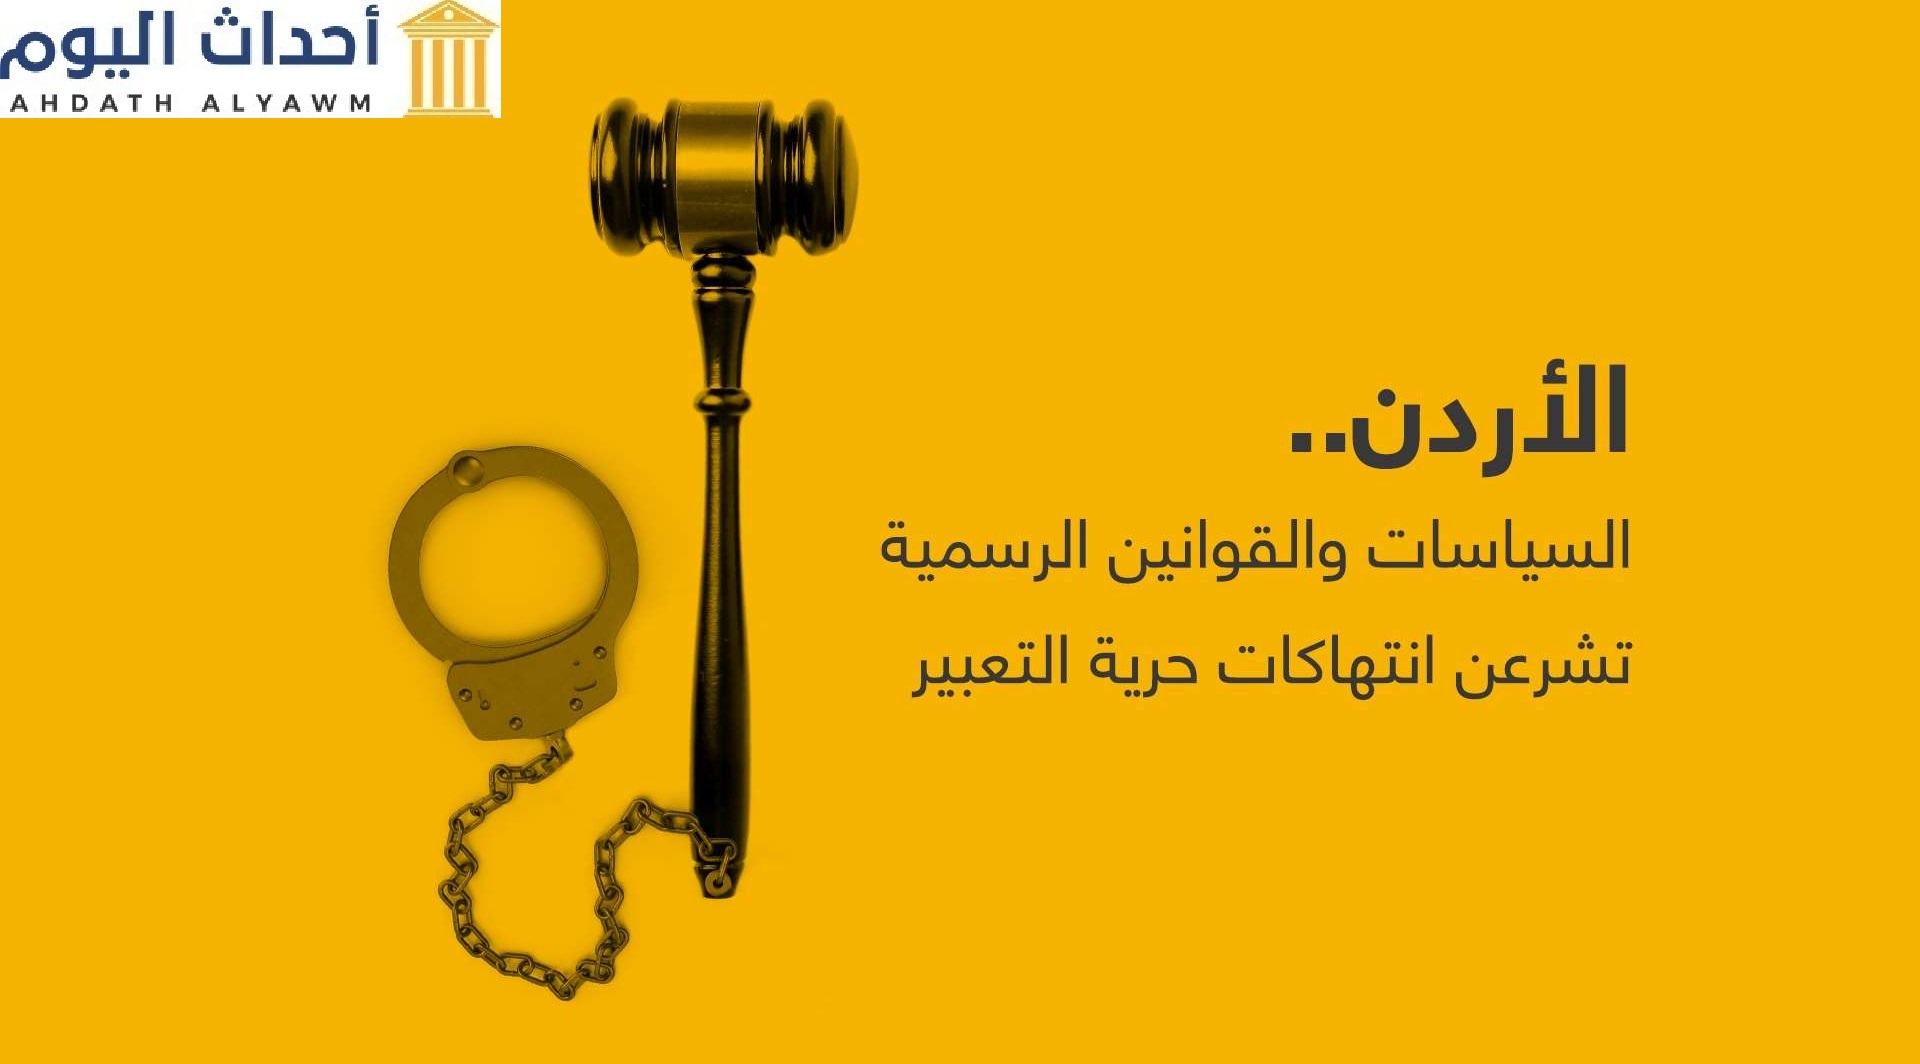 الأردن.. السياسات والقوانين الرسمية تشرعن انتهاكات حرية التعبير